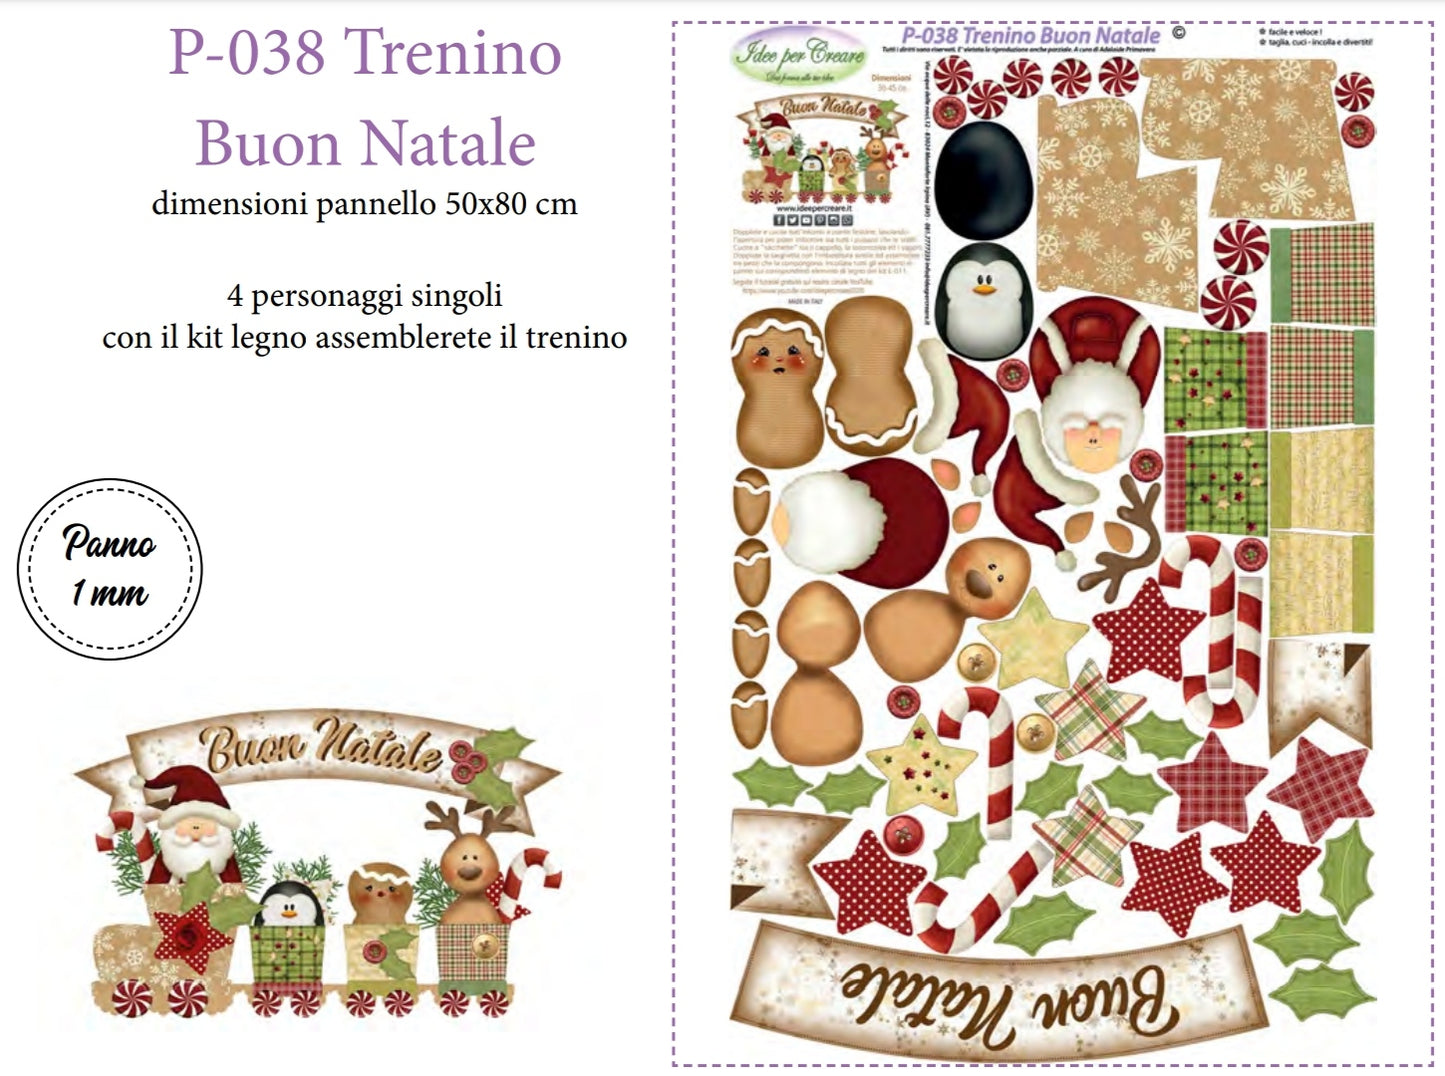 Pannello Trenino Buon Natale - P038 - Idee Per Creare